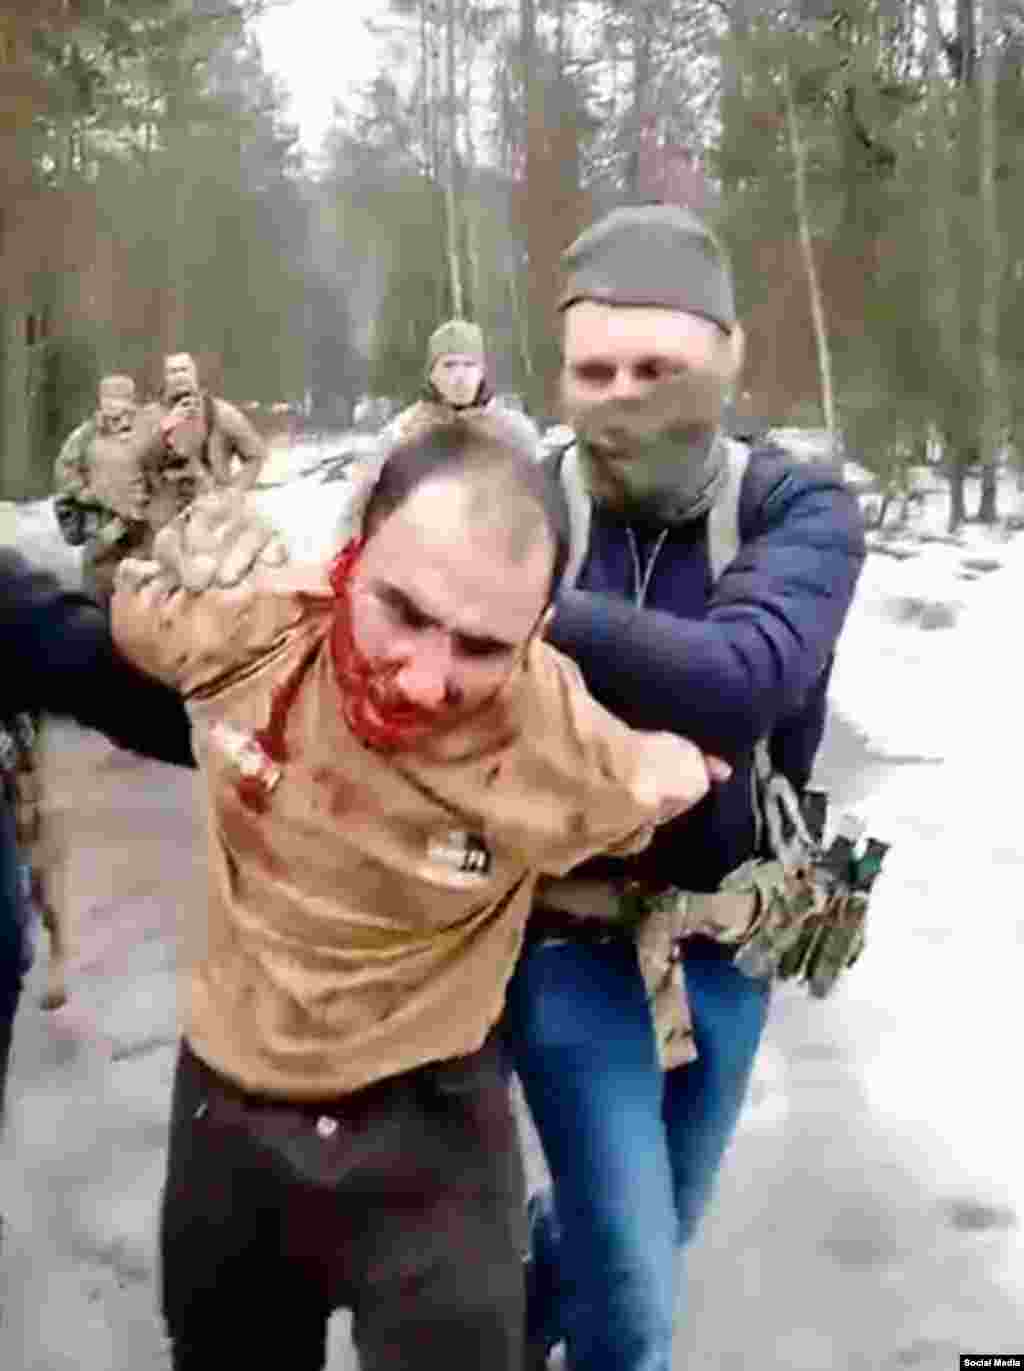 Saidakram Rajabalizoda este filmat după ce i s-ar fi tăiat urechea de către bărbați în uniformă care l-au prins într-o pădure din regiunea rusă Bryansk pe 23 martie. Canalul Russian Grey Zone Telegram, care este conectat la grupul Wagner, a publicat un videoclip în care se pretinde că urechea lui Rajabalizoda este tăiată și agenți de securitate încearcă să-l forțeze să o mănânce. Un bărbat din videoclip strigă la suspect: &bdquo;Mestecă, ticălosule! Te voi tăia și ți-l voi băga în gură.&rdquo;